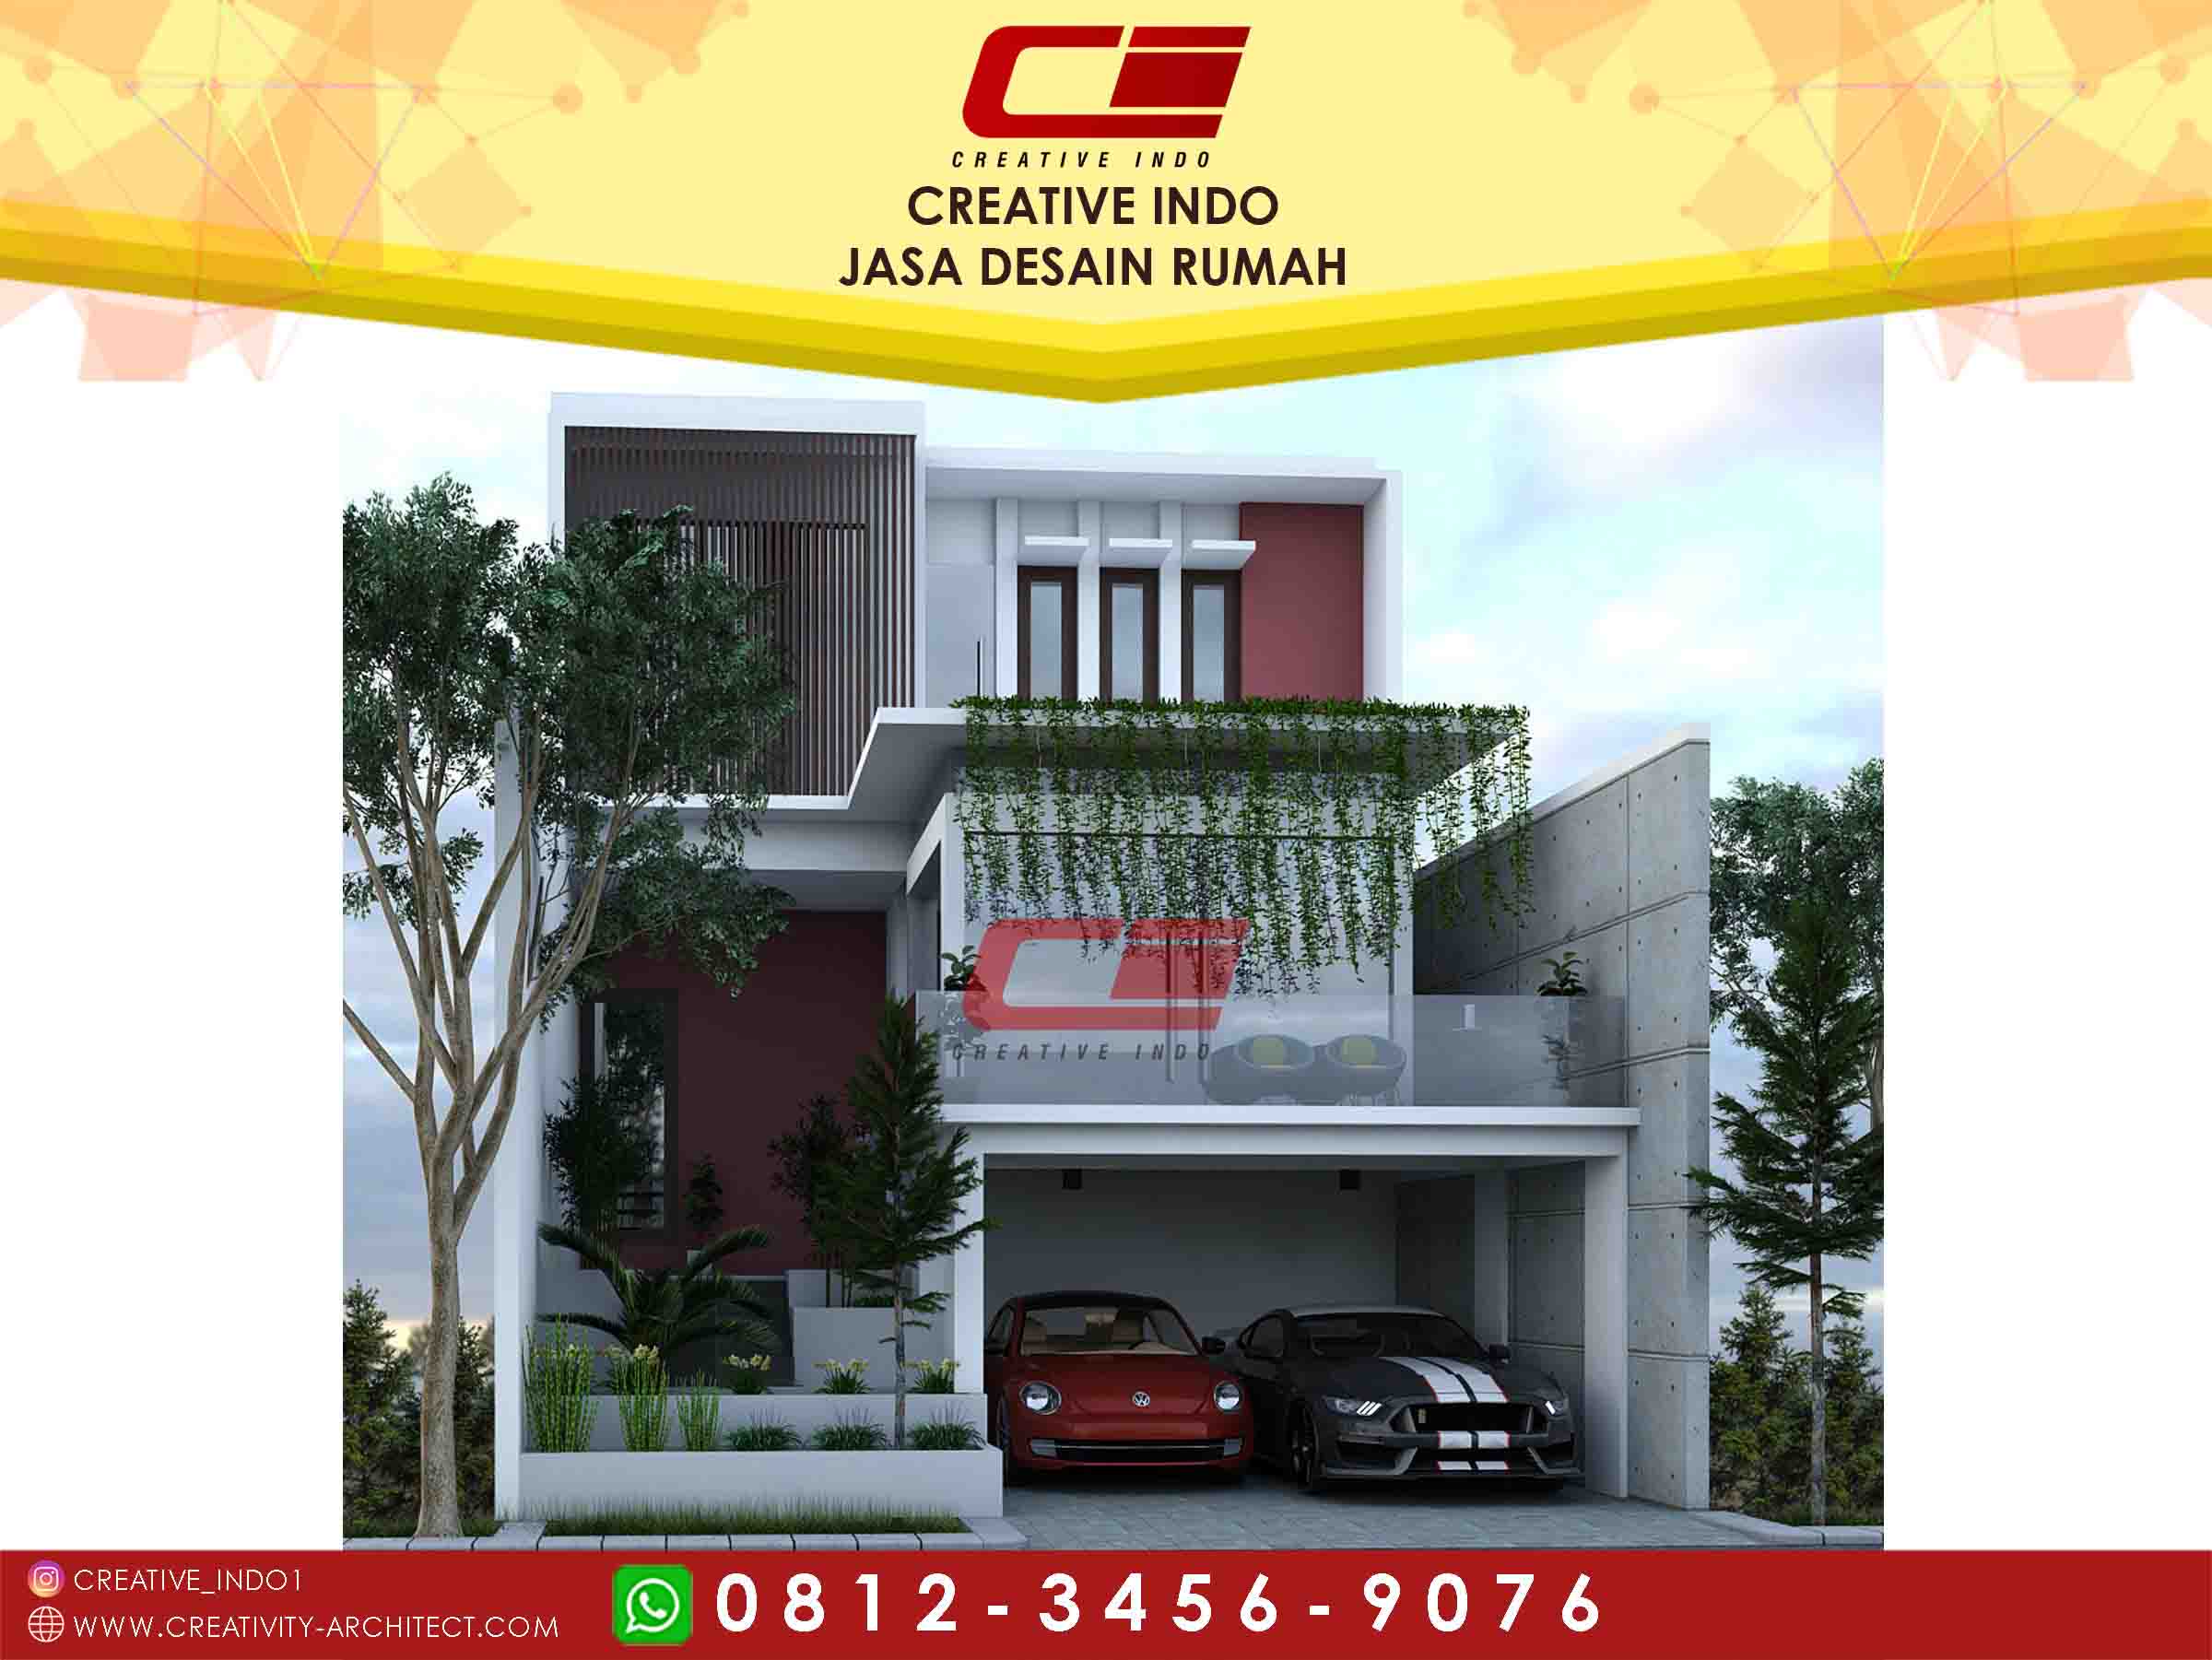  Jasa Desain Rumah Semarang  Alleyarch Com Jasa  Arsitek  